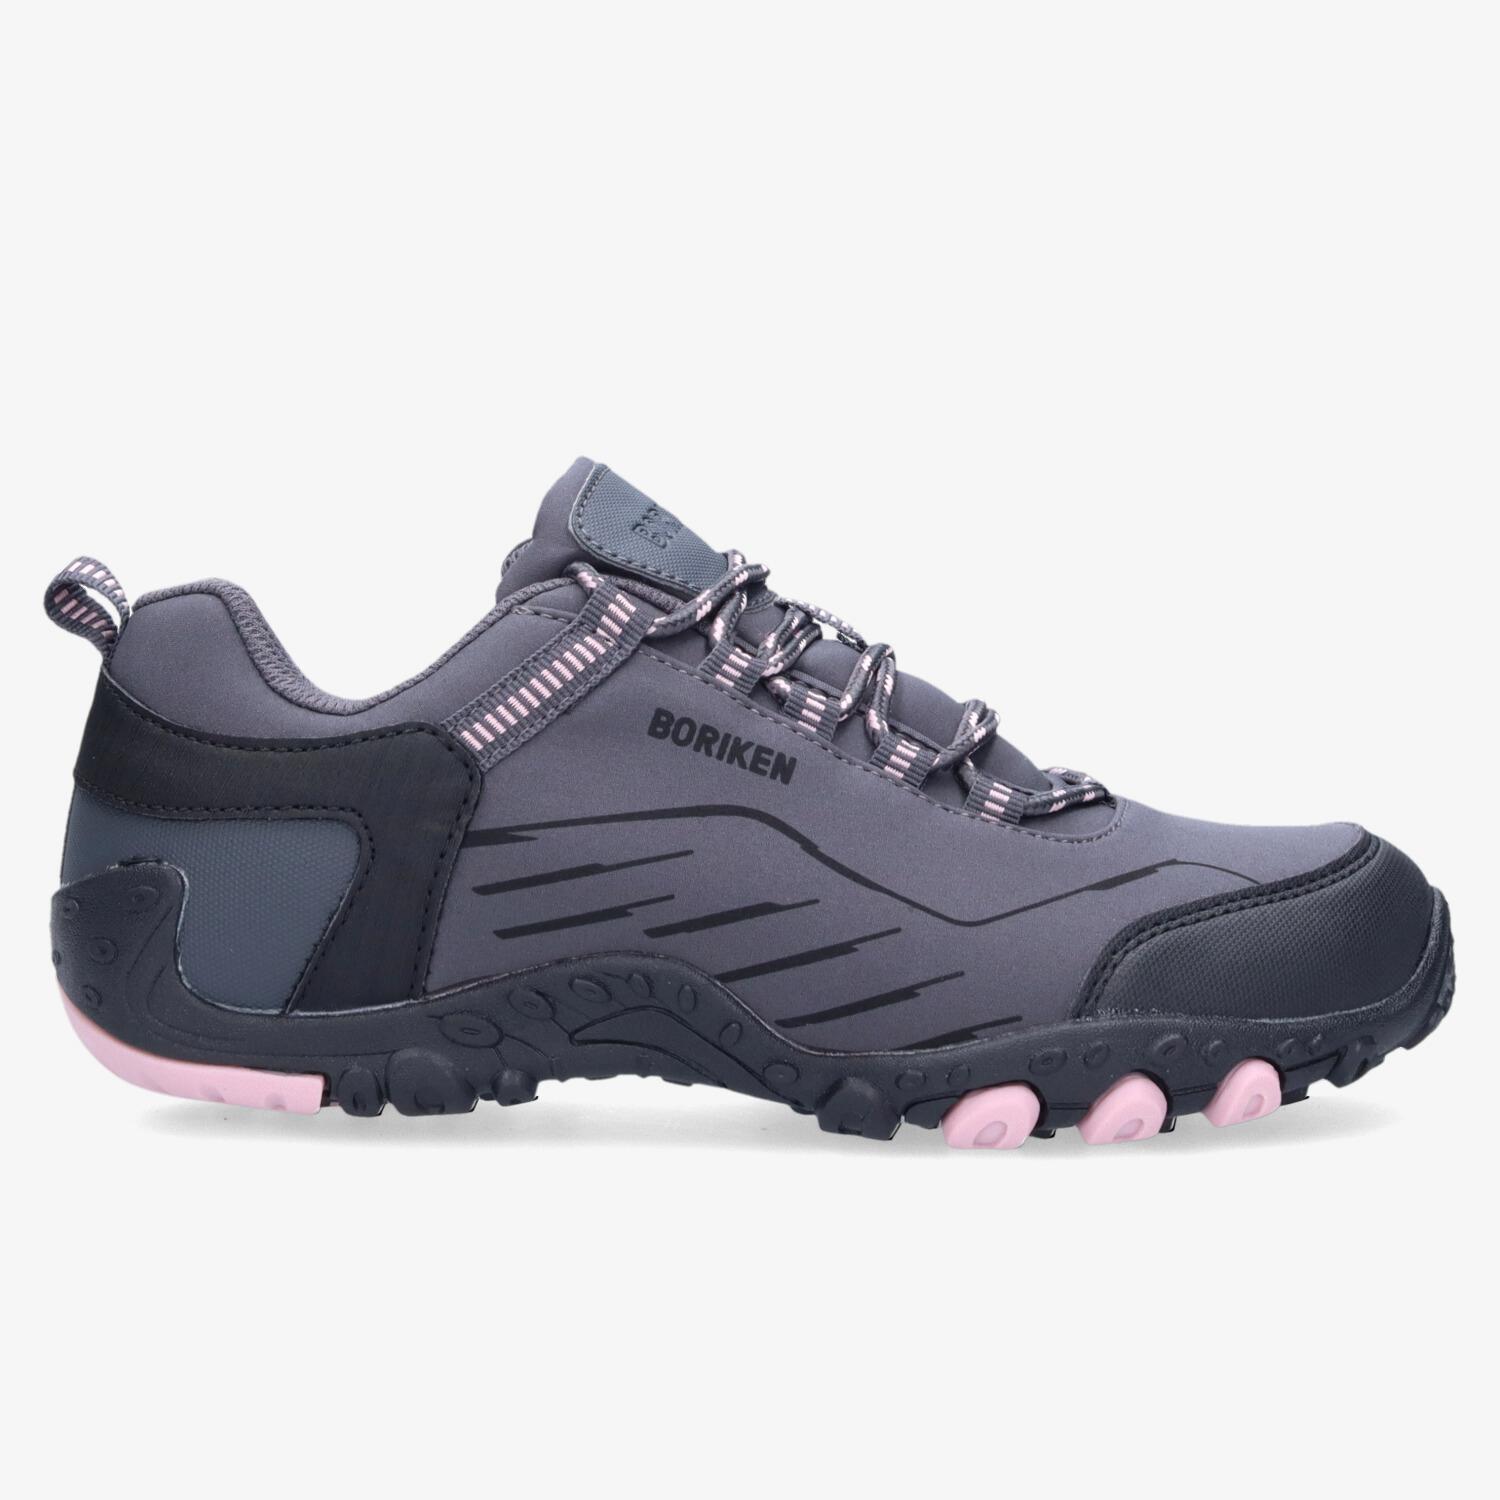 Boriken Dodo - Rose - Chaussures de randonnée femme sports taille 39